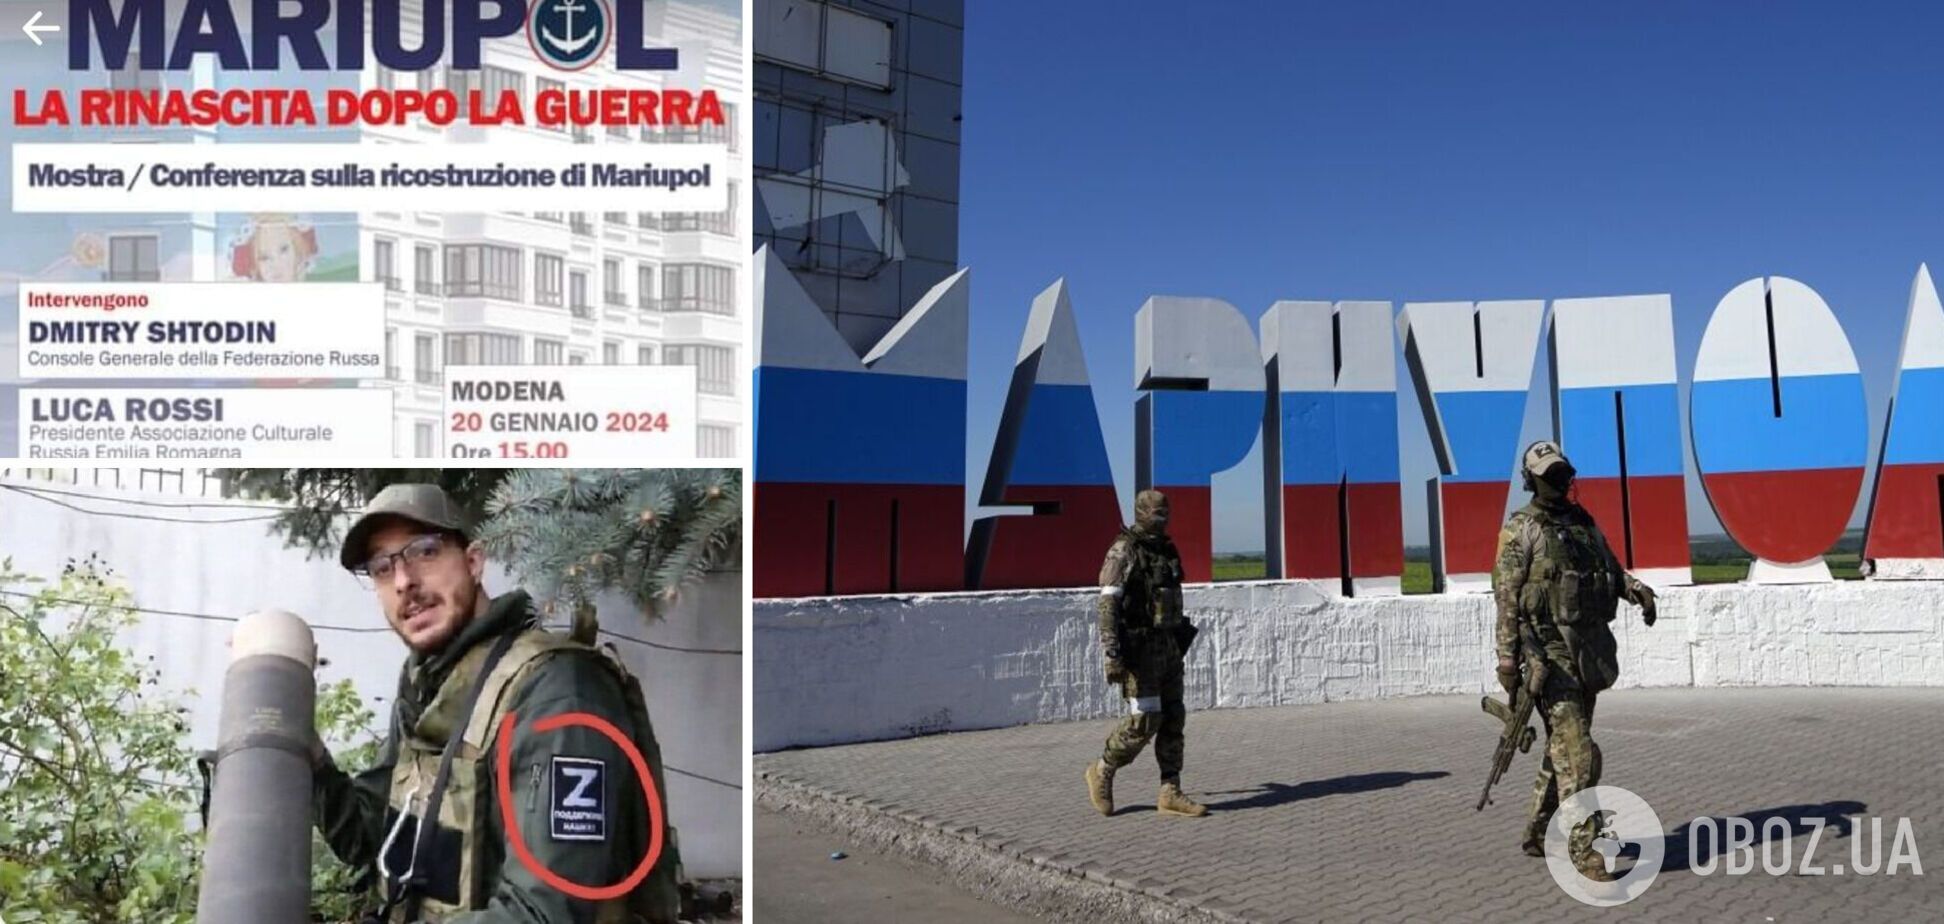 Российская пропаганда в действии: в Италии готовили выставку о 'расцвете' Мариуполя под оккупацией